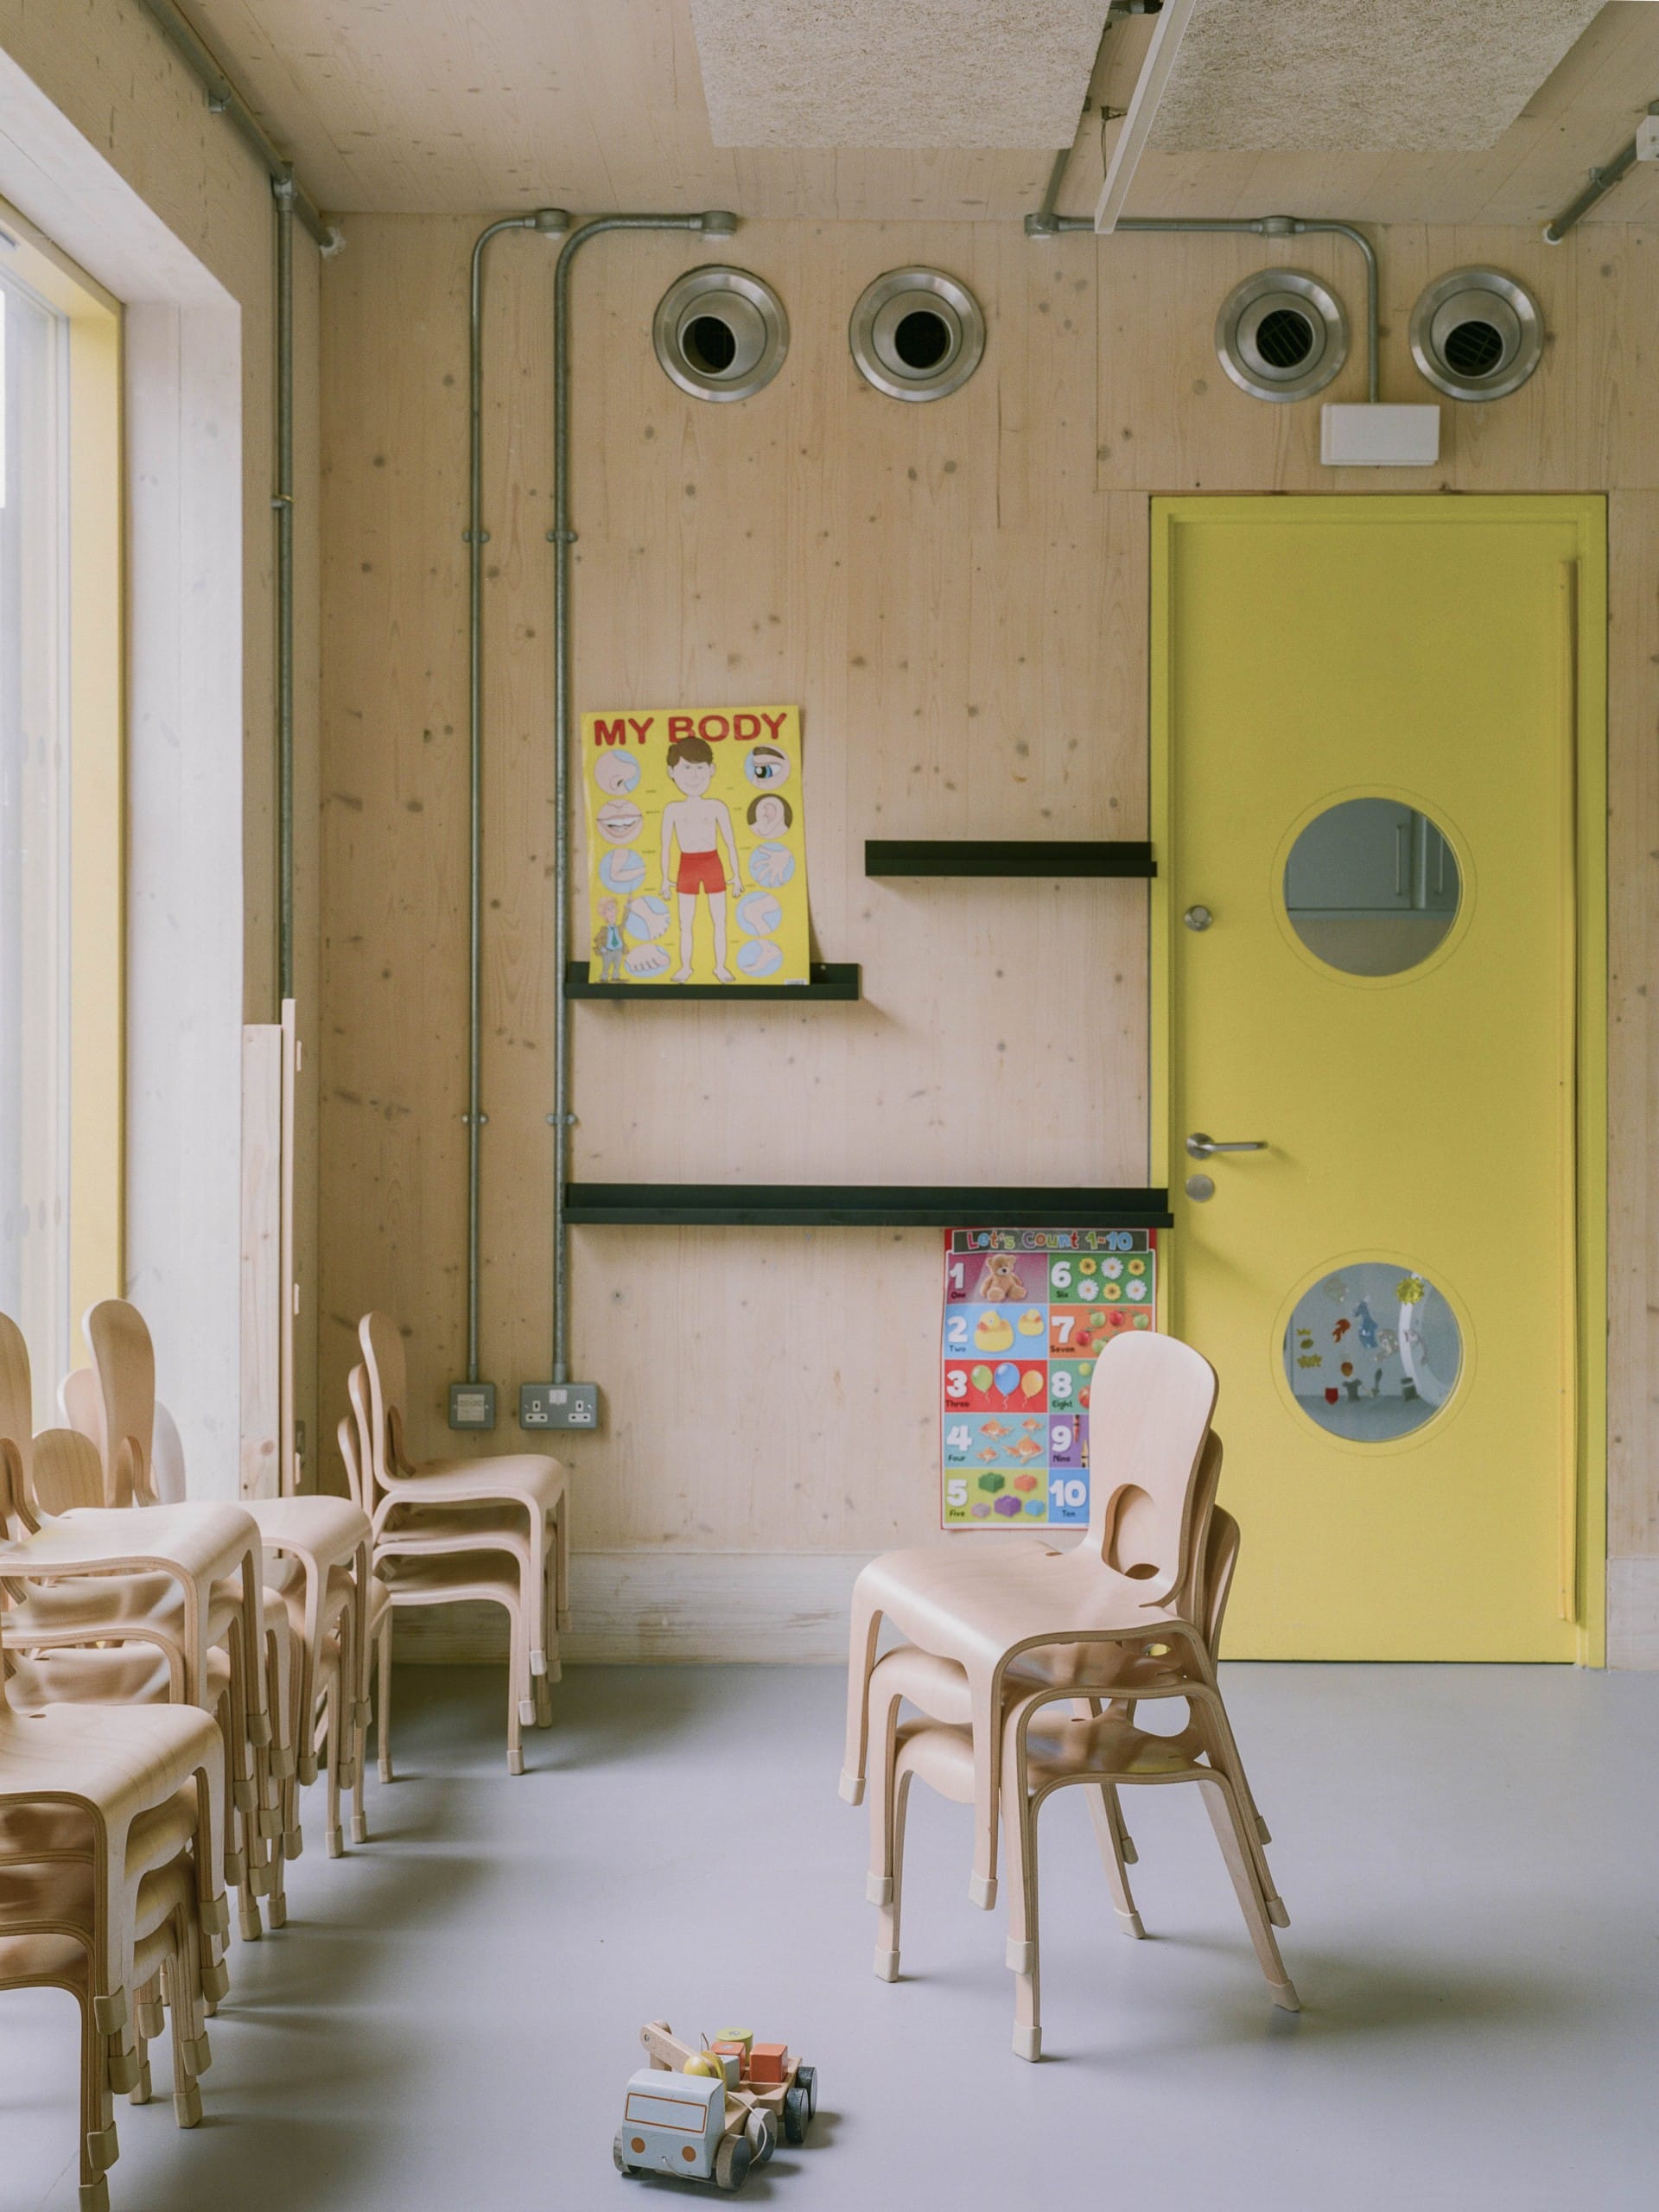 Ausschnitt eines Innenraums, Wand aus hellem Holz, angeschnitten eine gelbe Türe, im Vordergrund mehrere gestapelte Holzstühle. Foto: Lorenzo Zandri